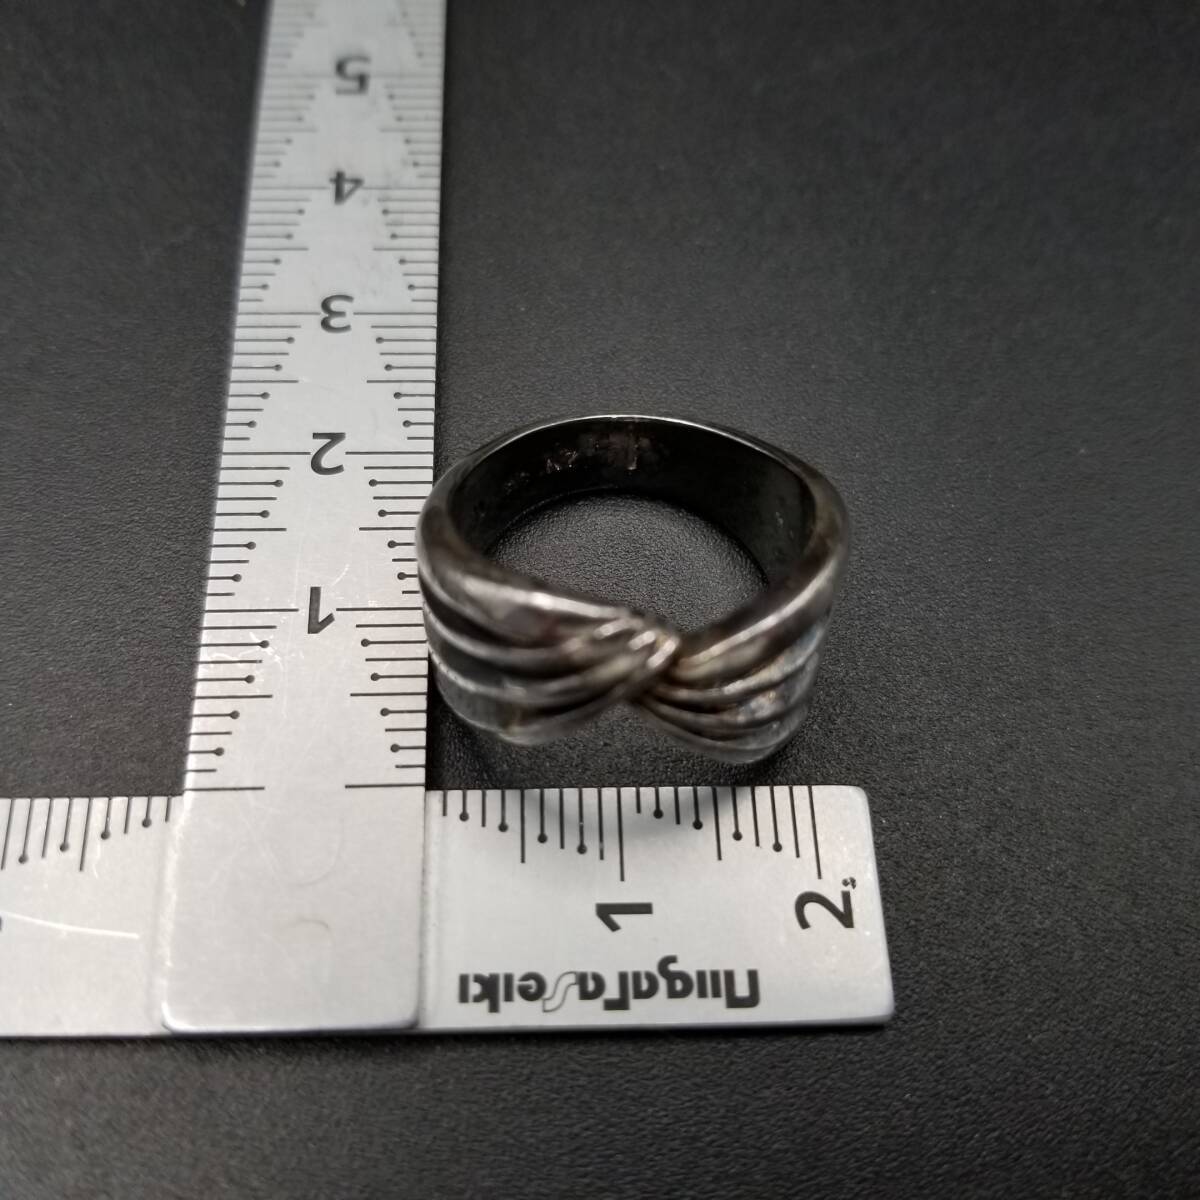  лента узор Cross полоса cut сверху товар Vintage серебряный металлизированный кольцо кольцо ювелирные изделия импорт Y14-J